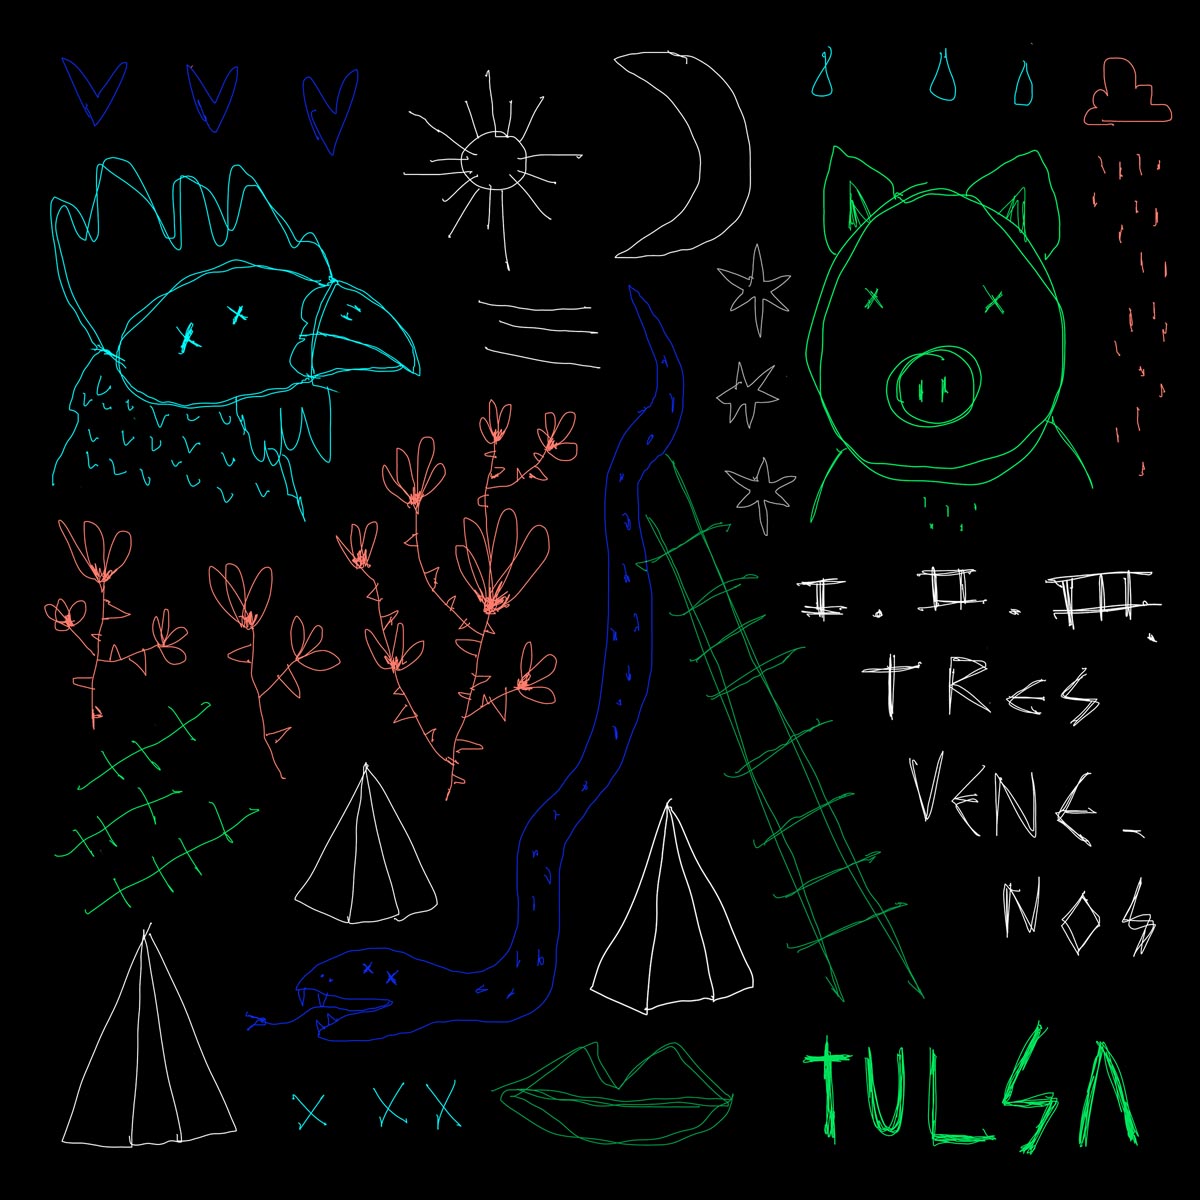 Tulsa-Tres-Venenos-portada